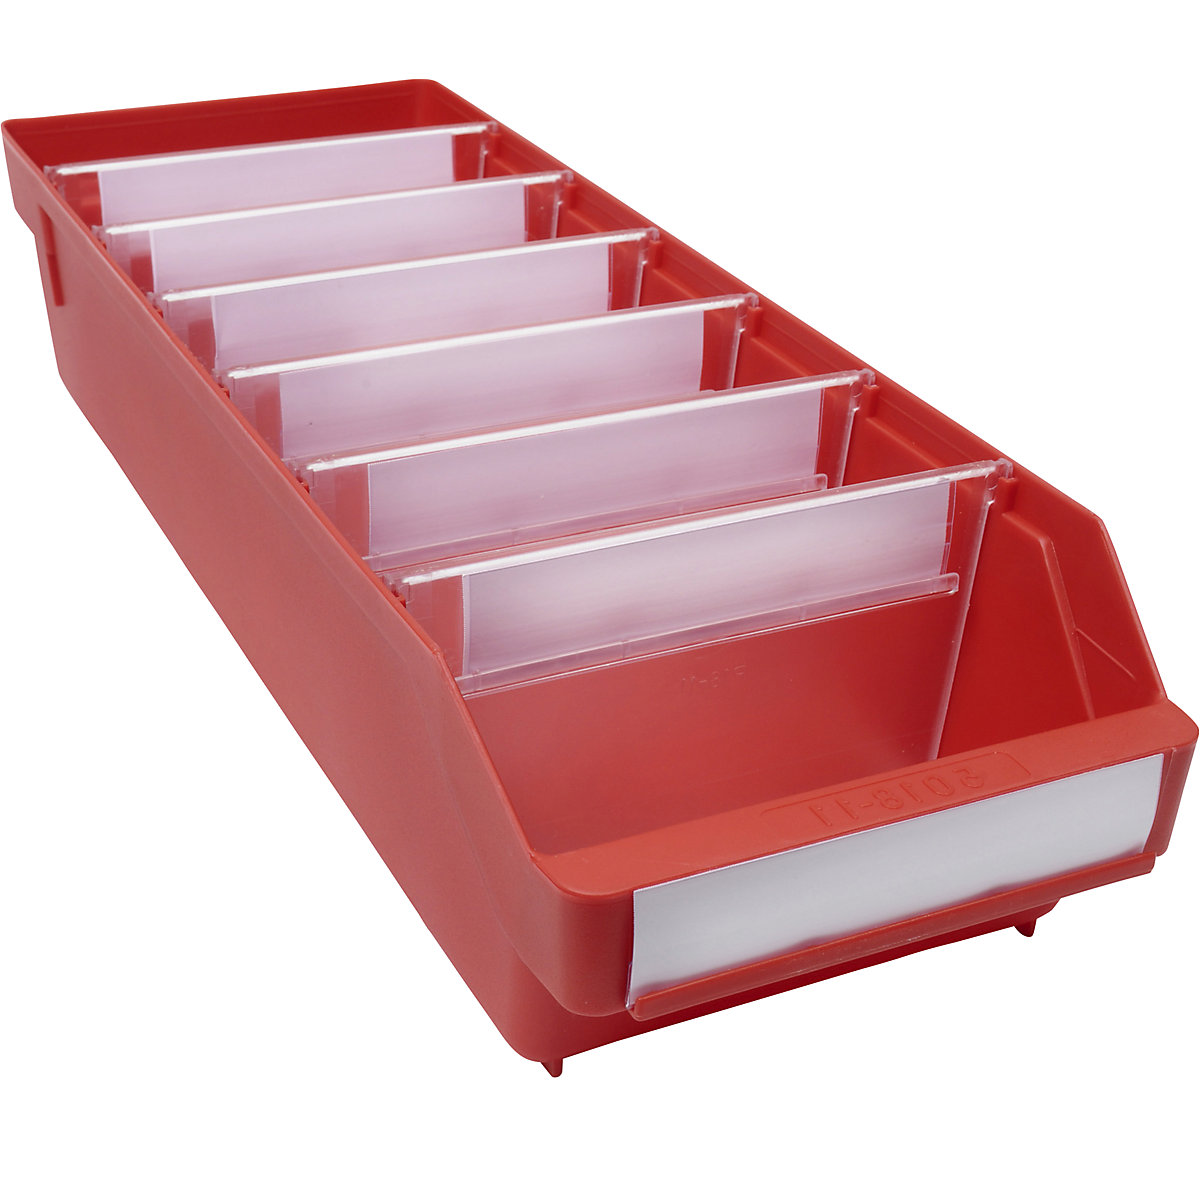 Regalkasten aus hochschlagfestem Polypropylen STEMO, rot, LxBxH 500 x 180 x 110 mm, VE 20 Stk-14